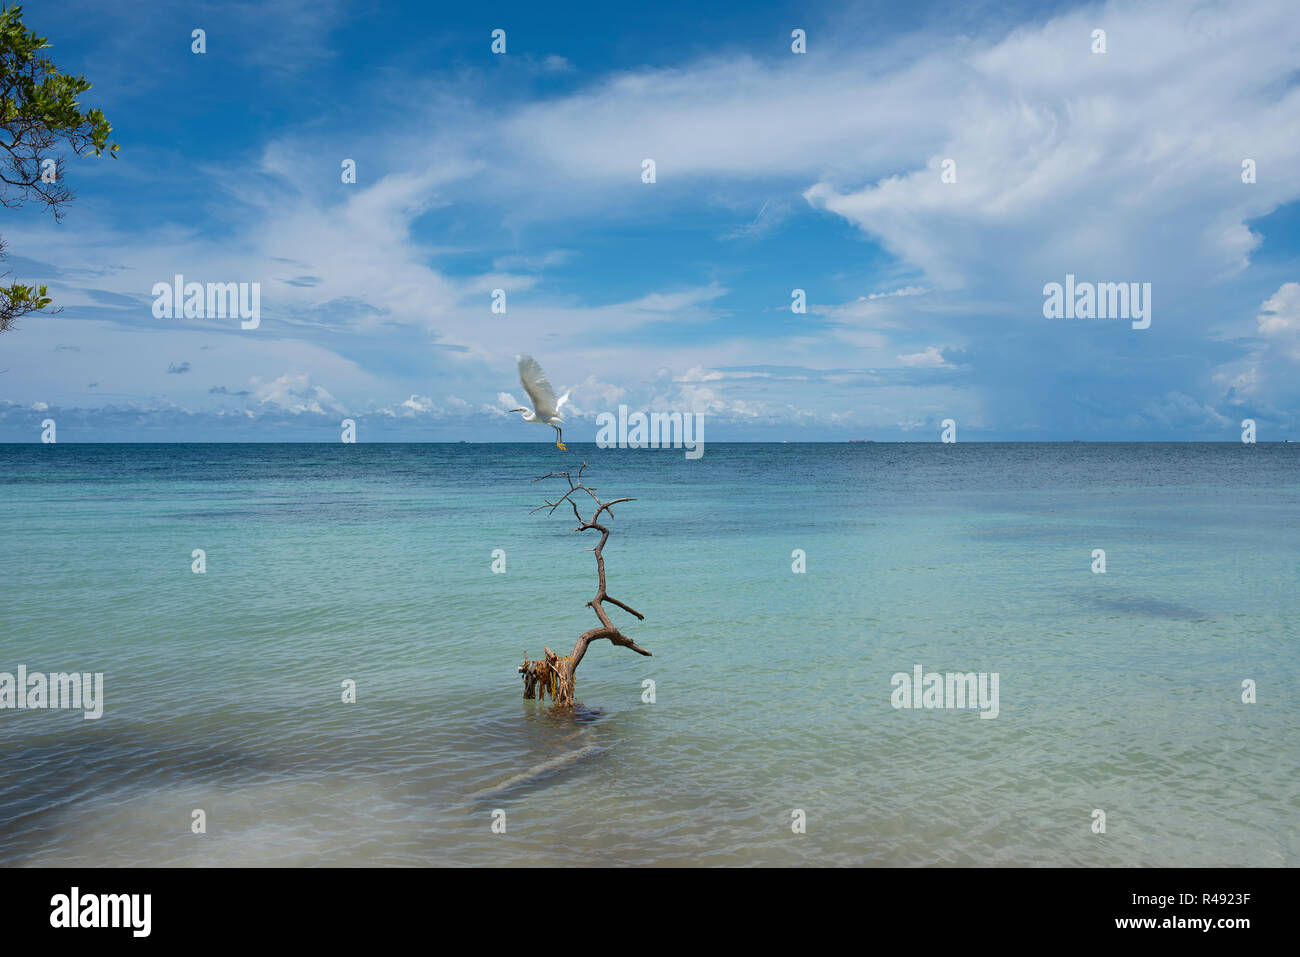 Silberreiher Fliegen ein treibholz. Die paradiesische Seenlandschaft von Playa Azul (blaue Strand) private Insel. Cartagena de Indias, Kolumbien Stockfoto